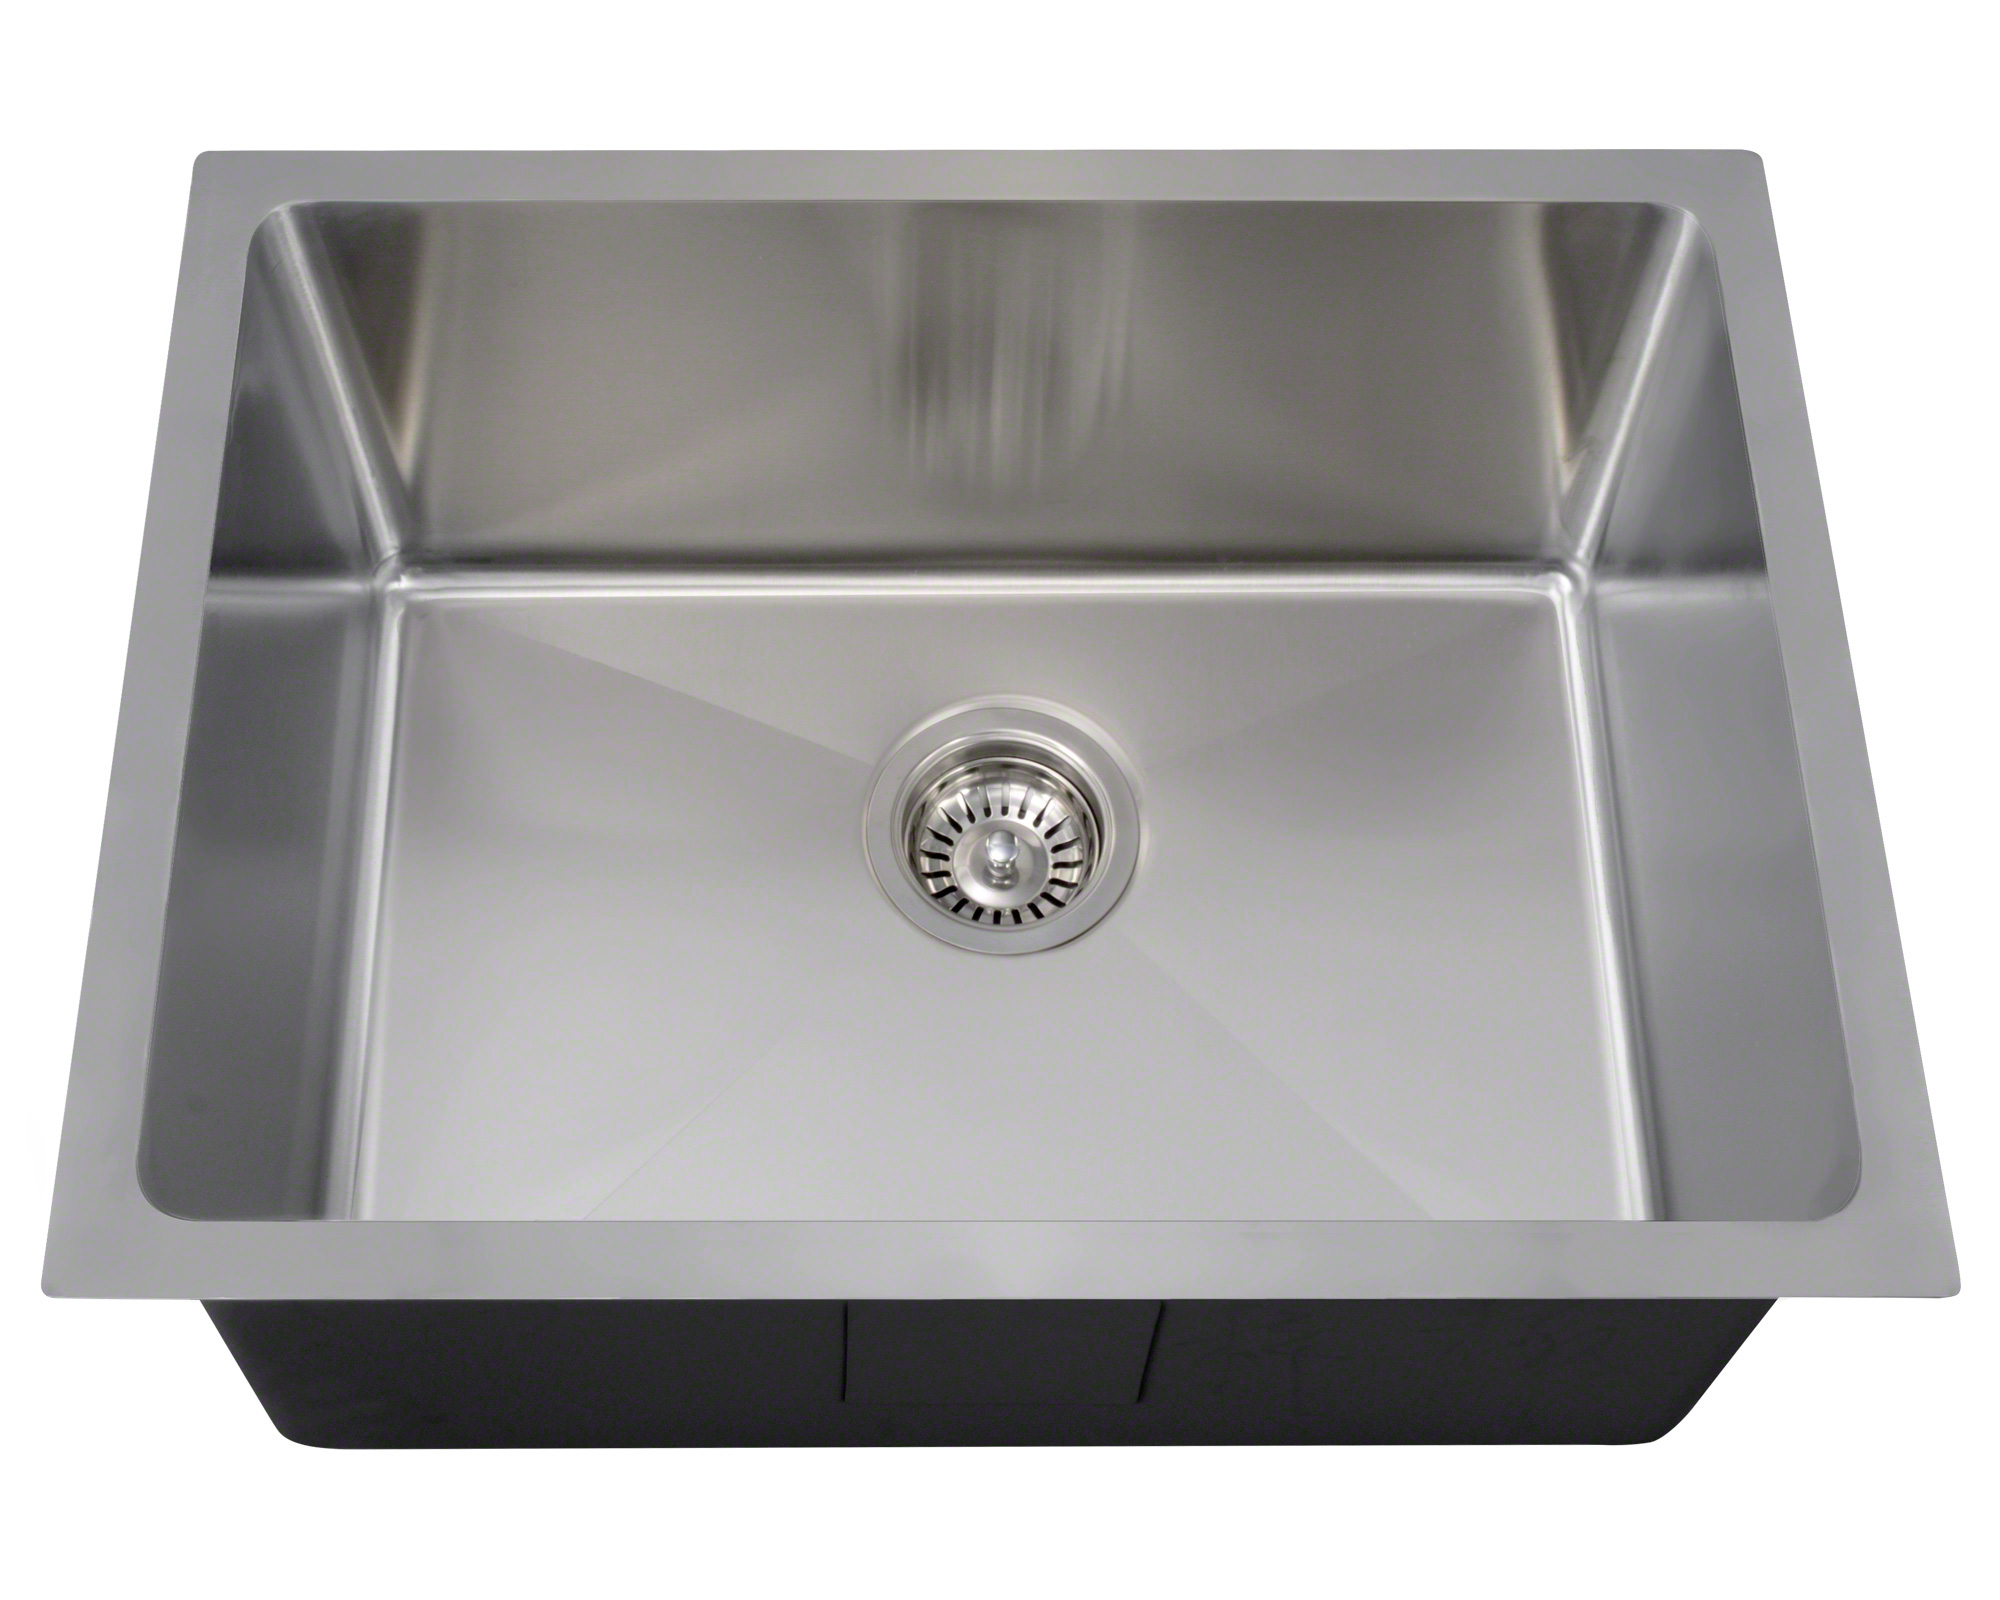 14 gauge stainless steel kitchen sink